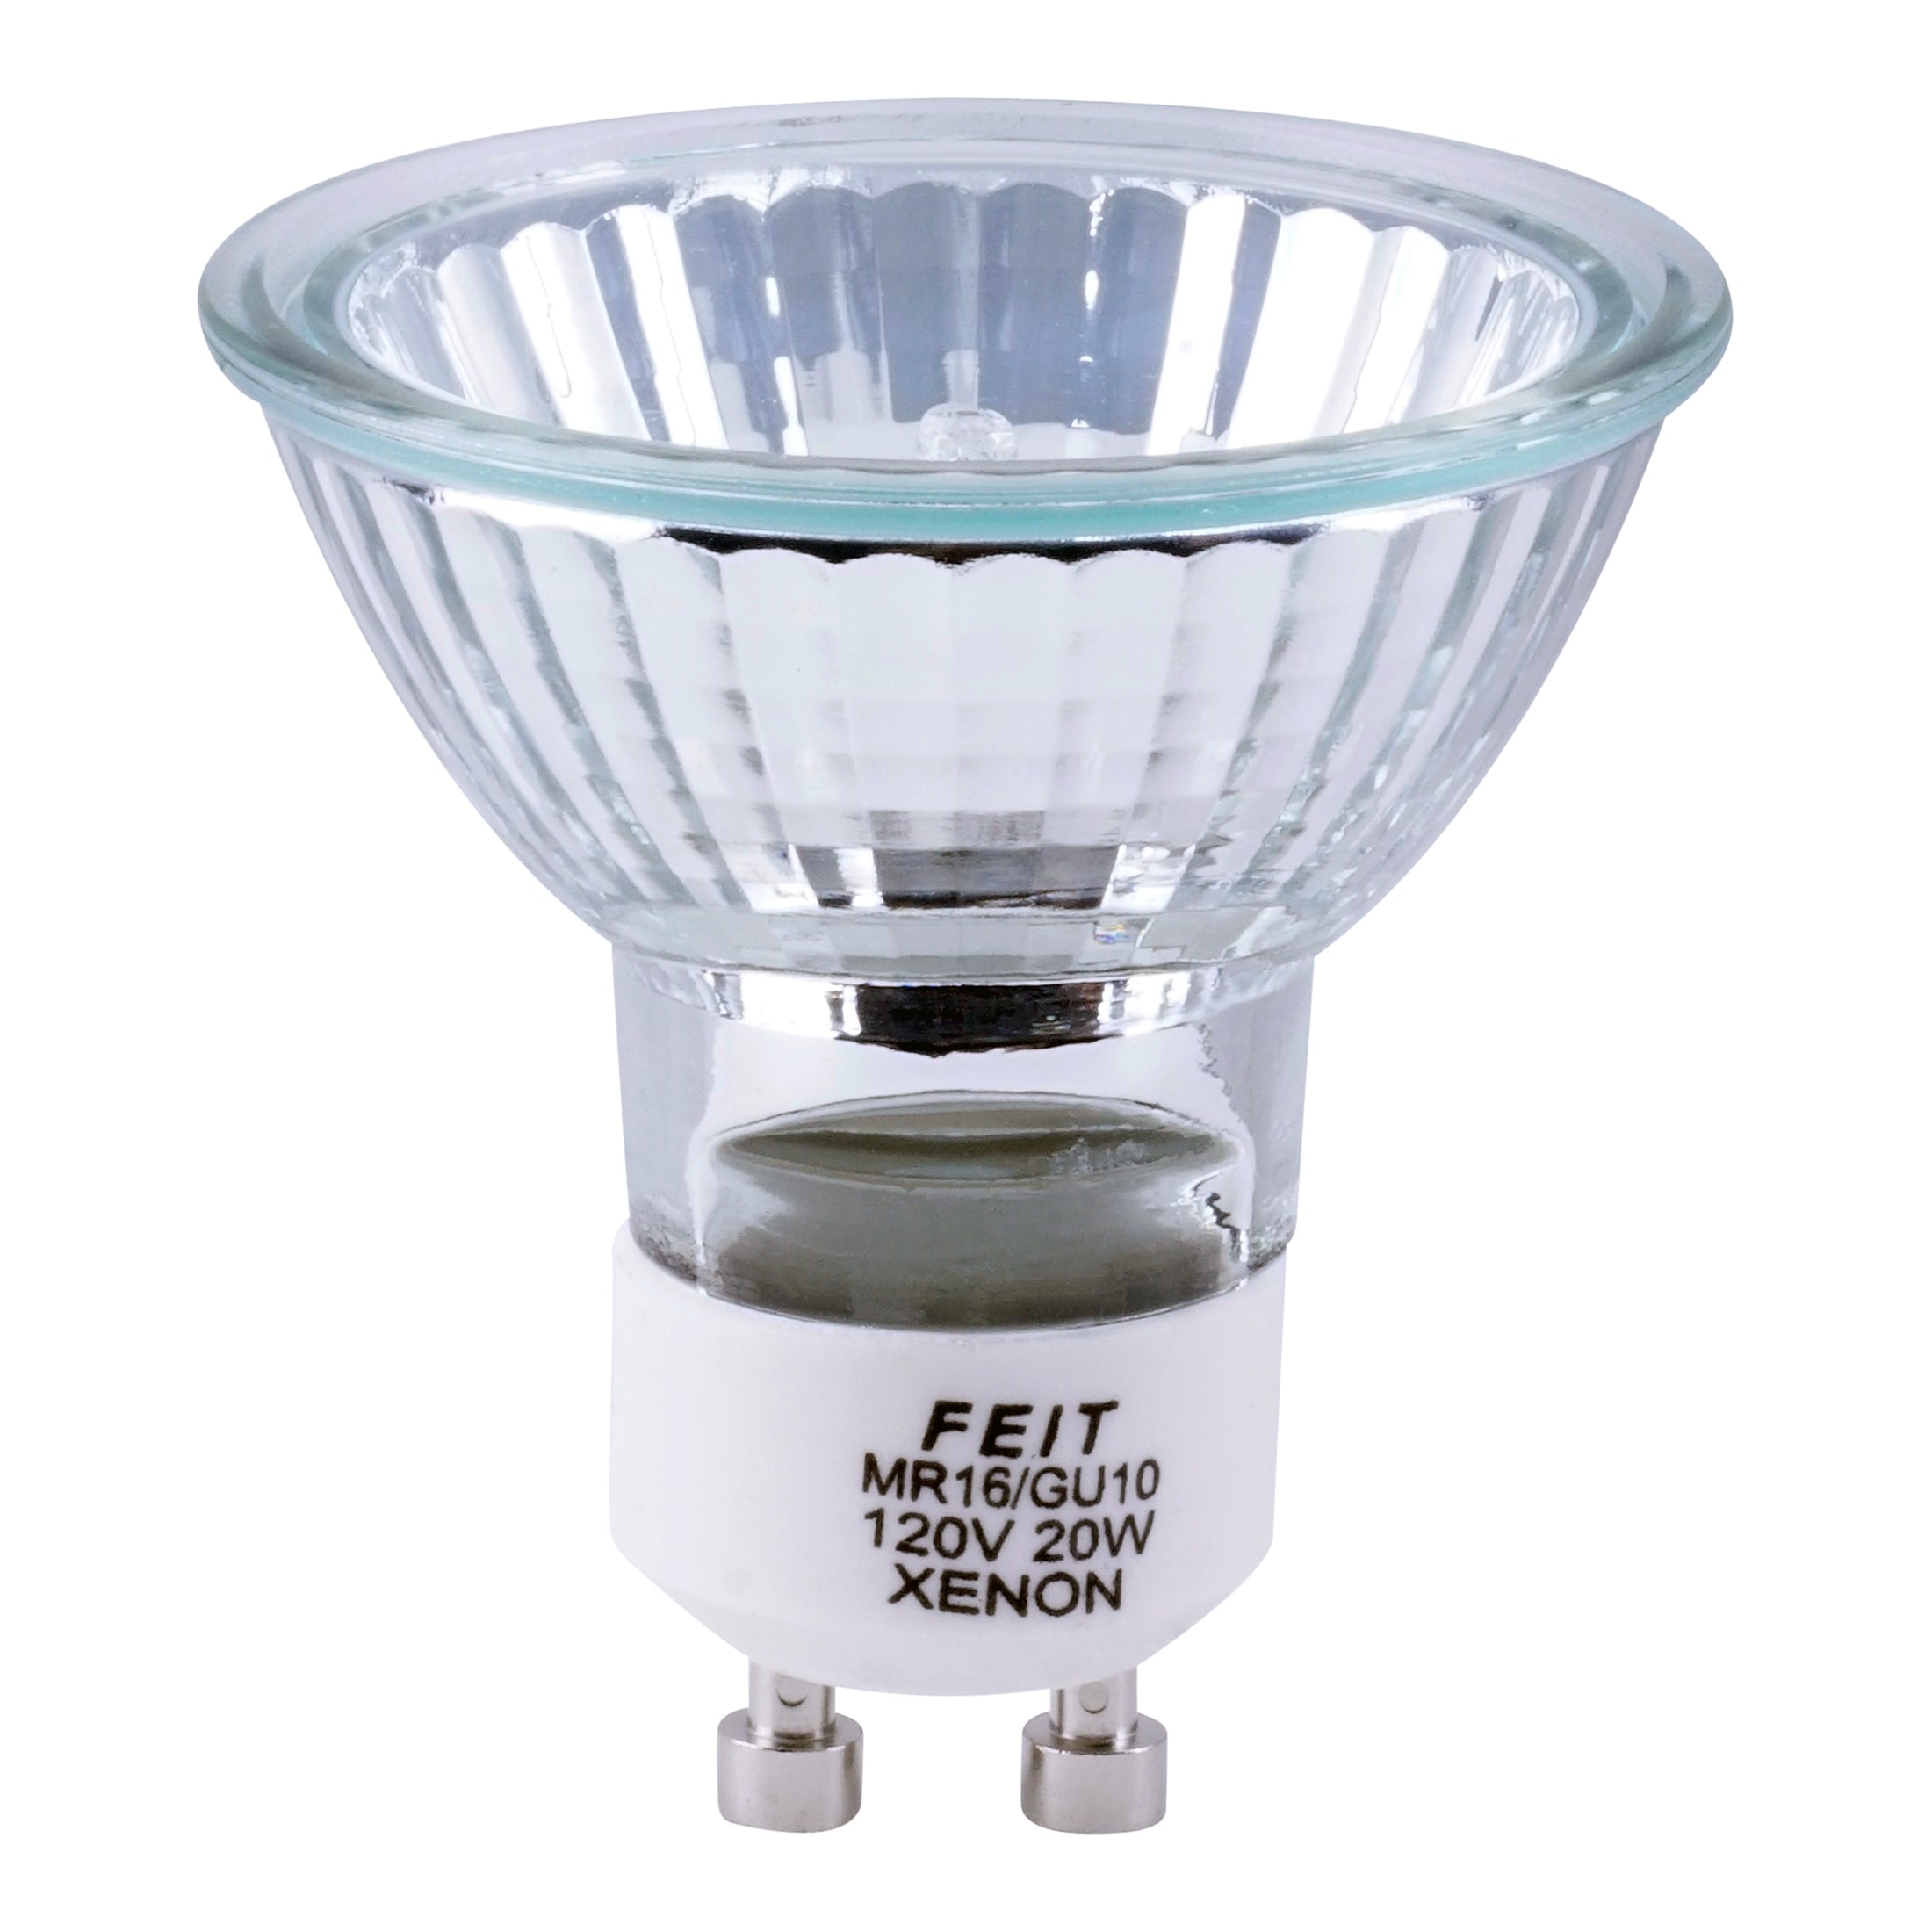 GU10 pin base Light Bulbs at